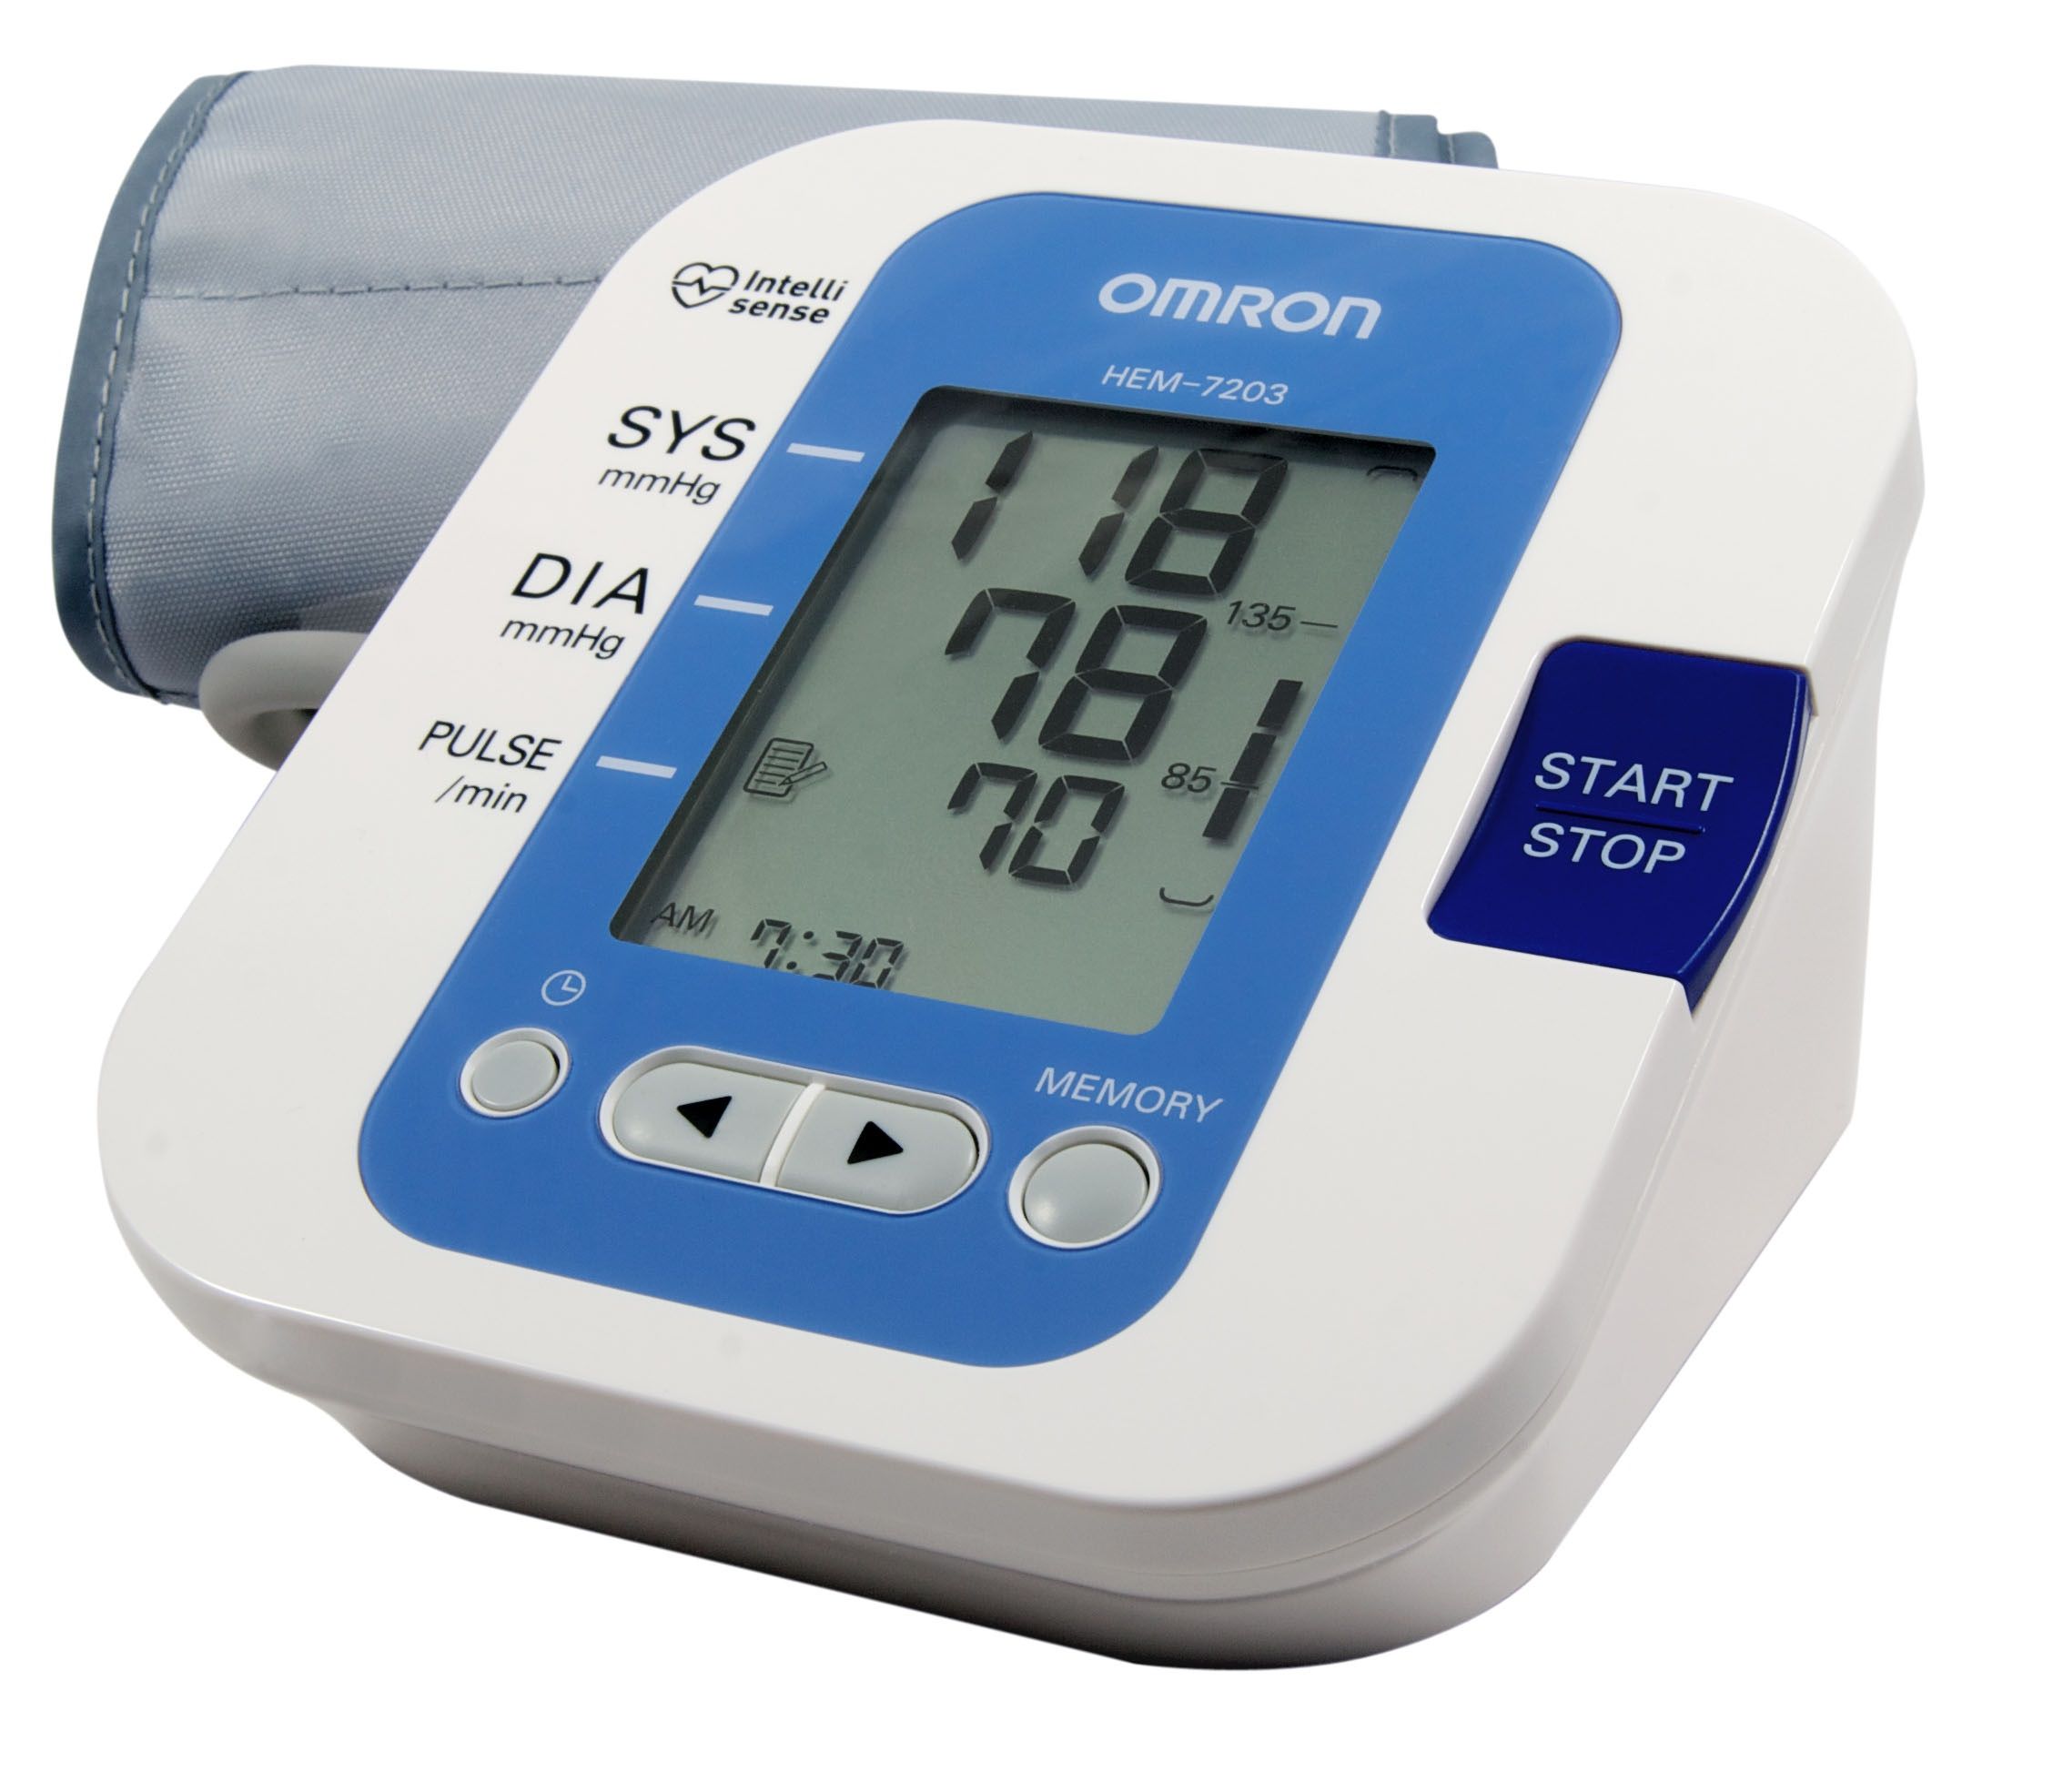 Lưu ý cách sử dụng máy đo đường huyết tại nhà